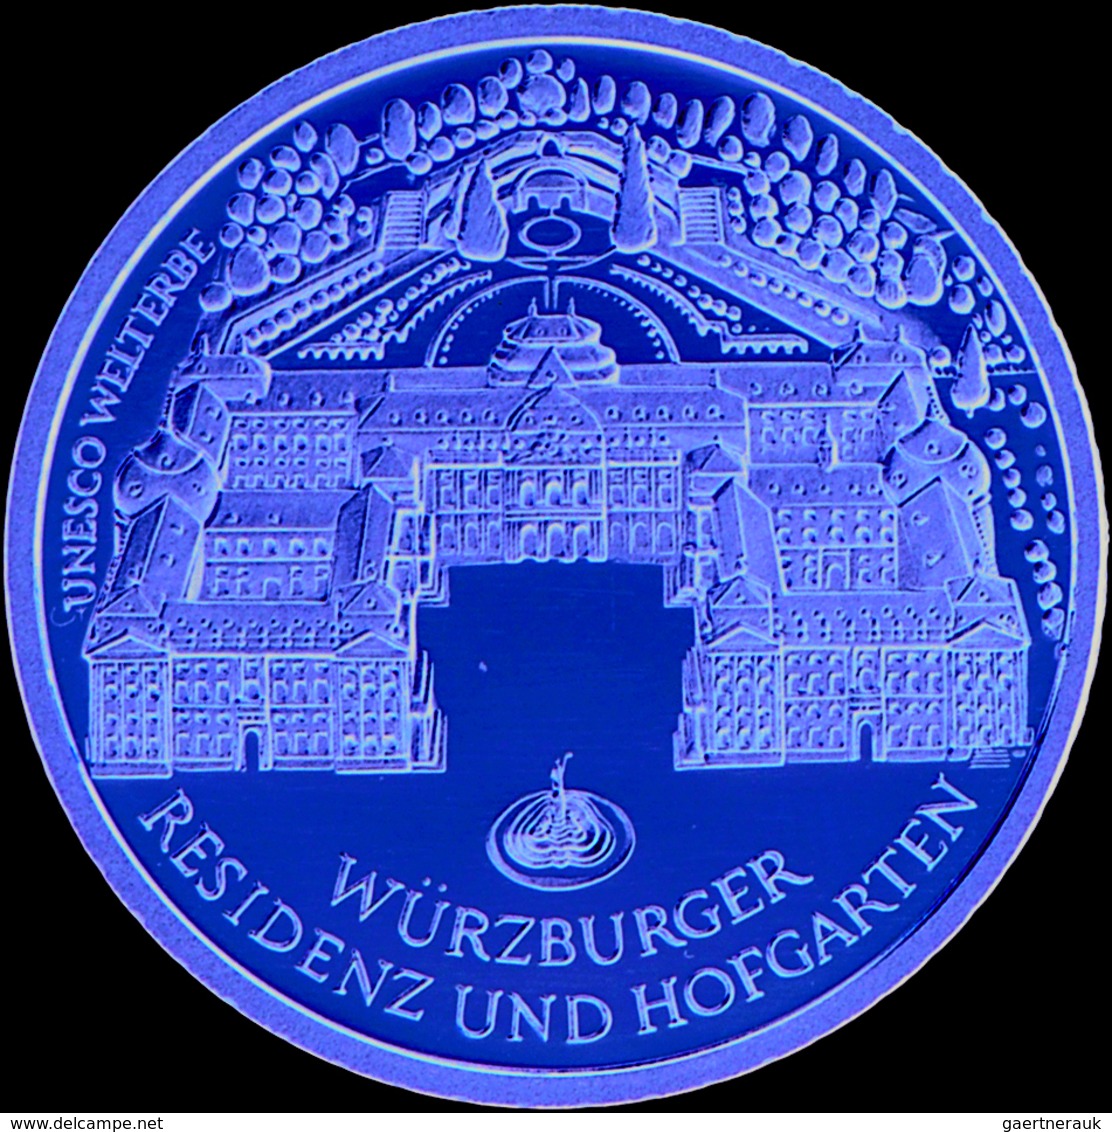 Deutschland - Anlagegold: 13 x 100 € Goldmünzen der BRD 2002-2014. Alle Münzen in original Dosen der